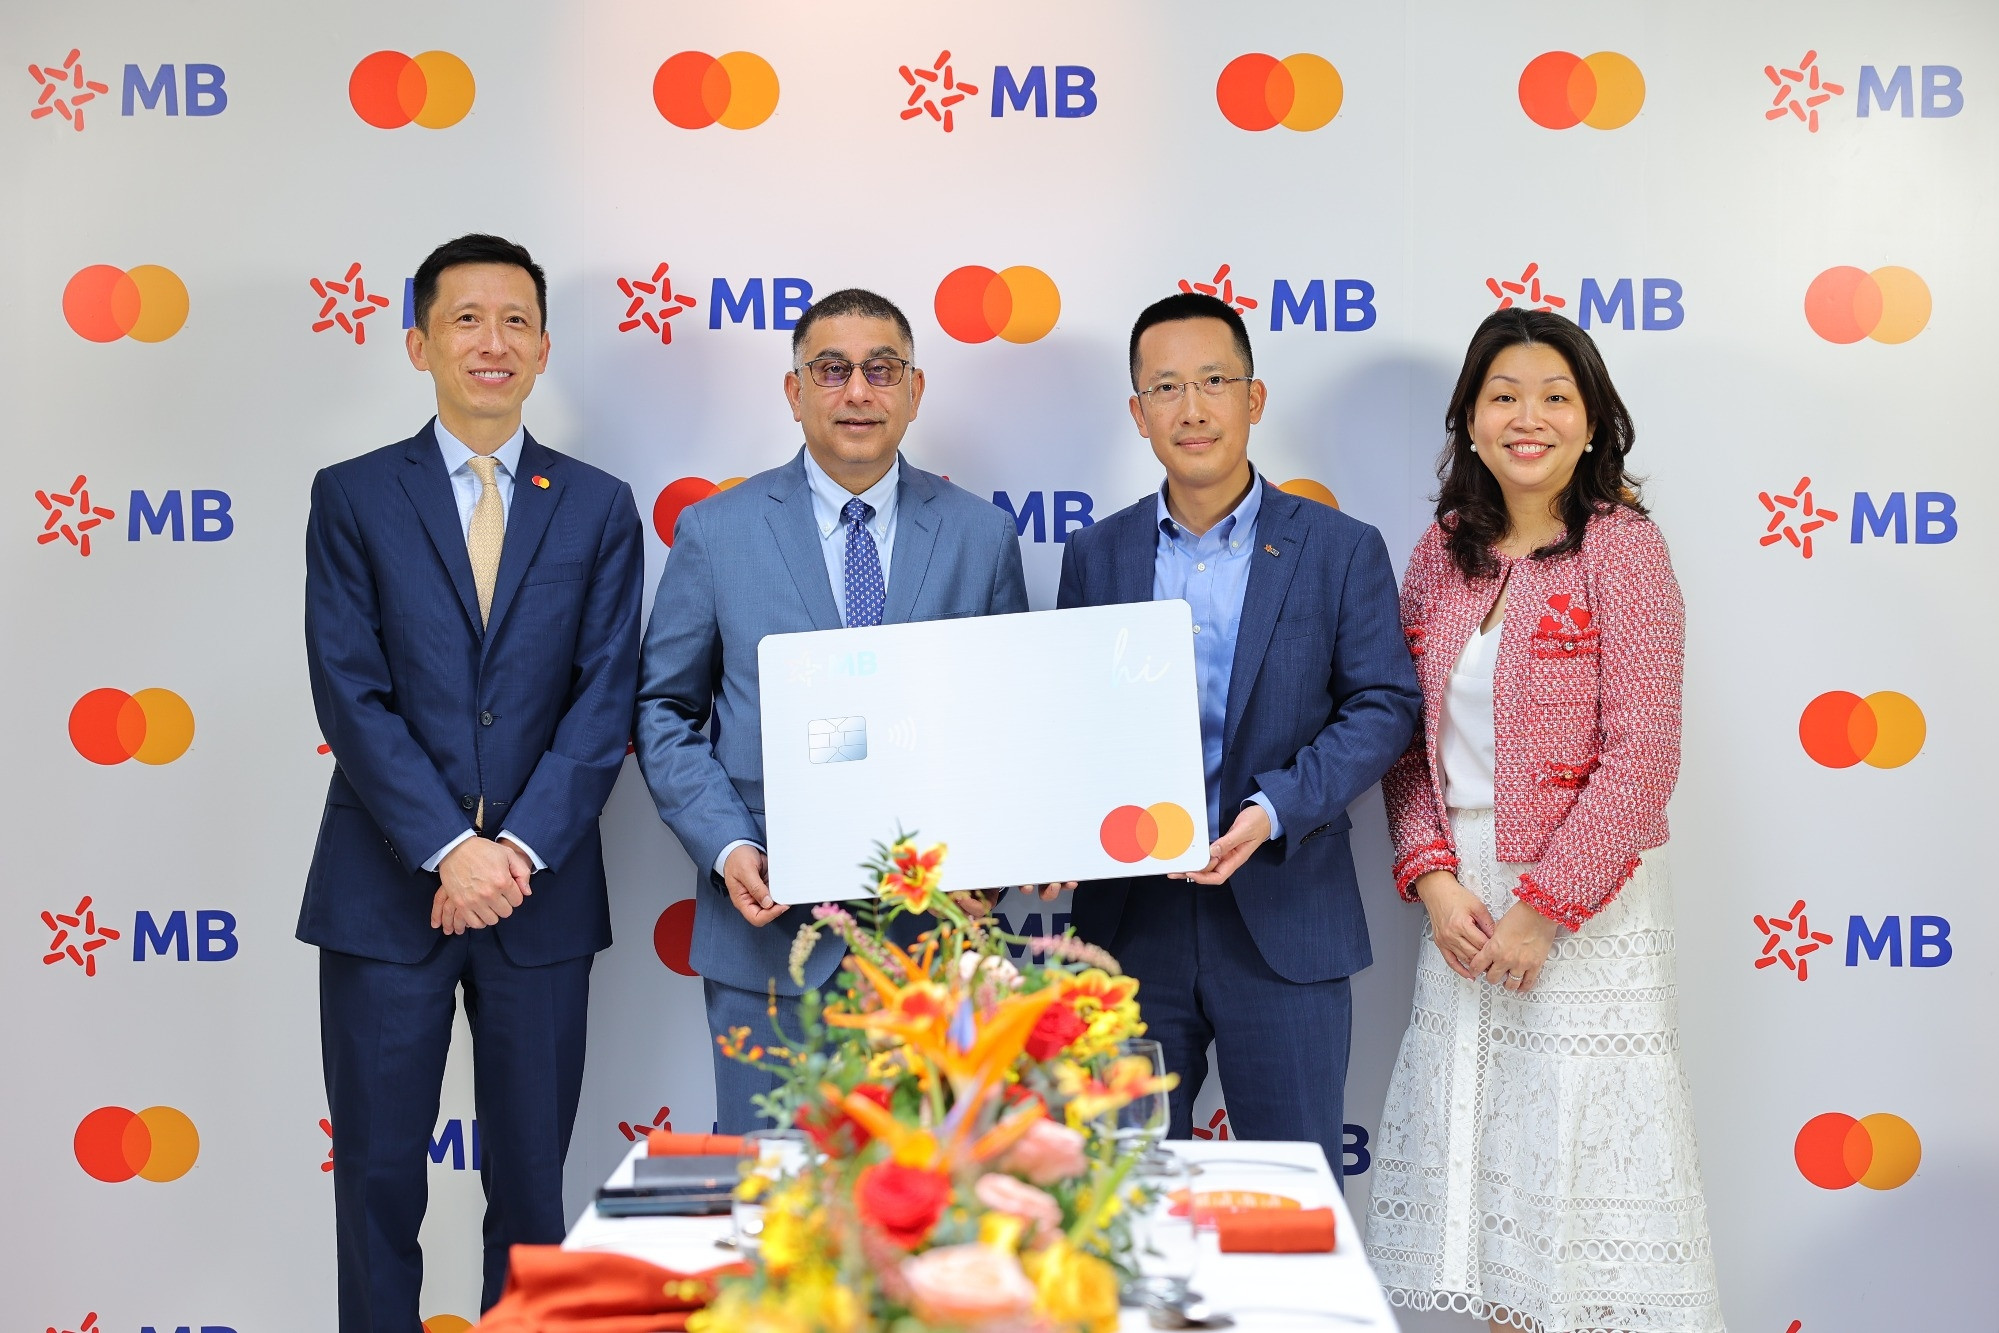 MB và Mastercard công bố hợp tác toàn diện